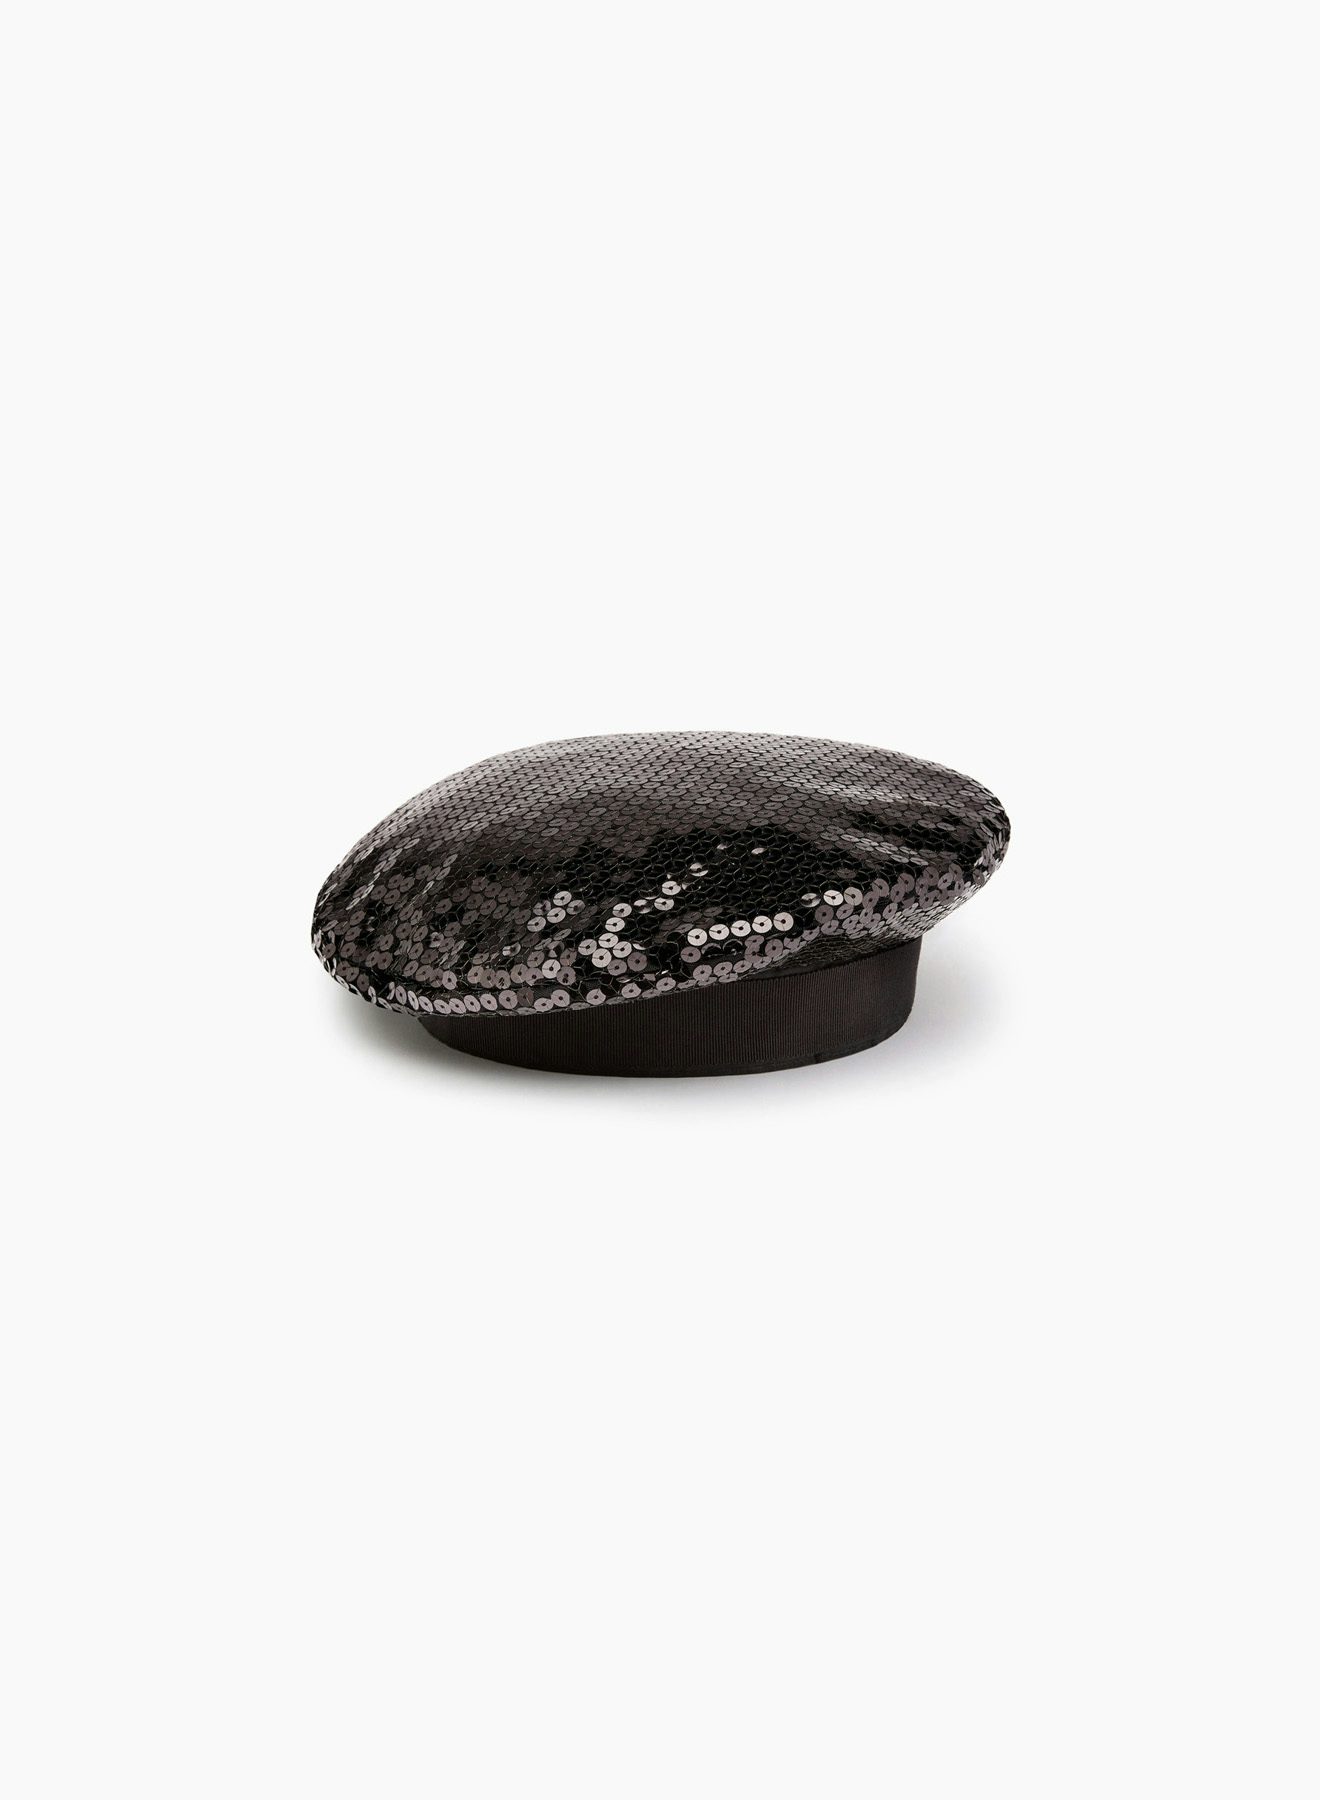 Béret en sequins noir - Nina Ricci